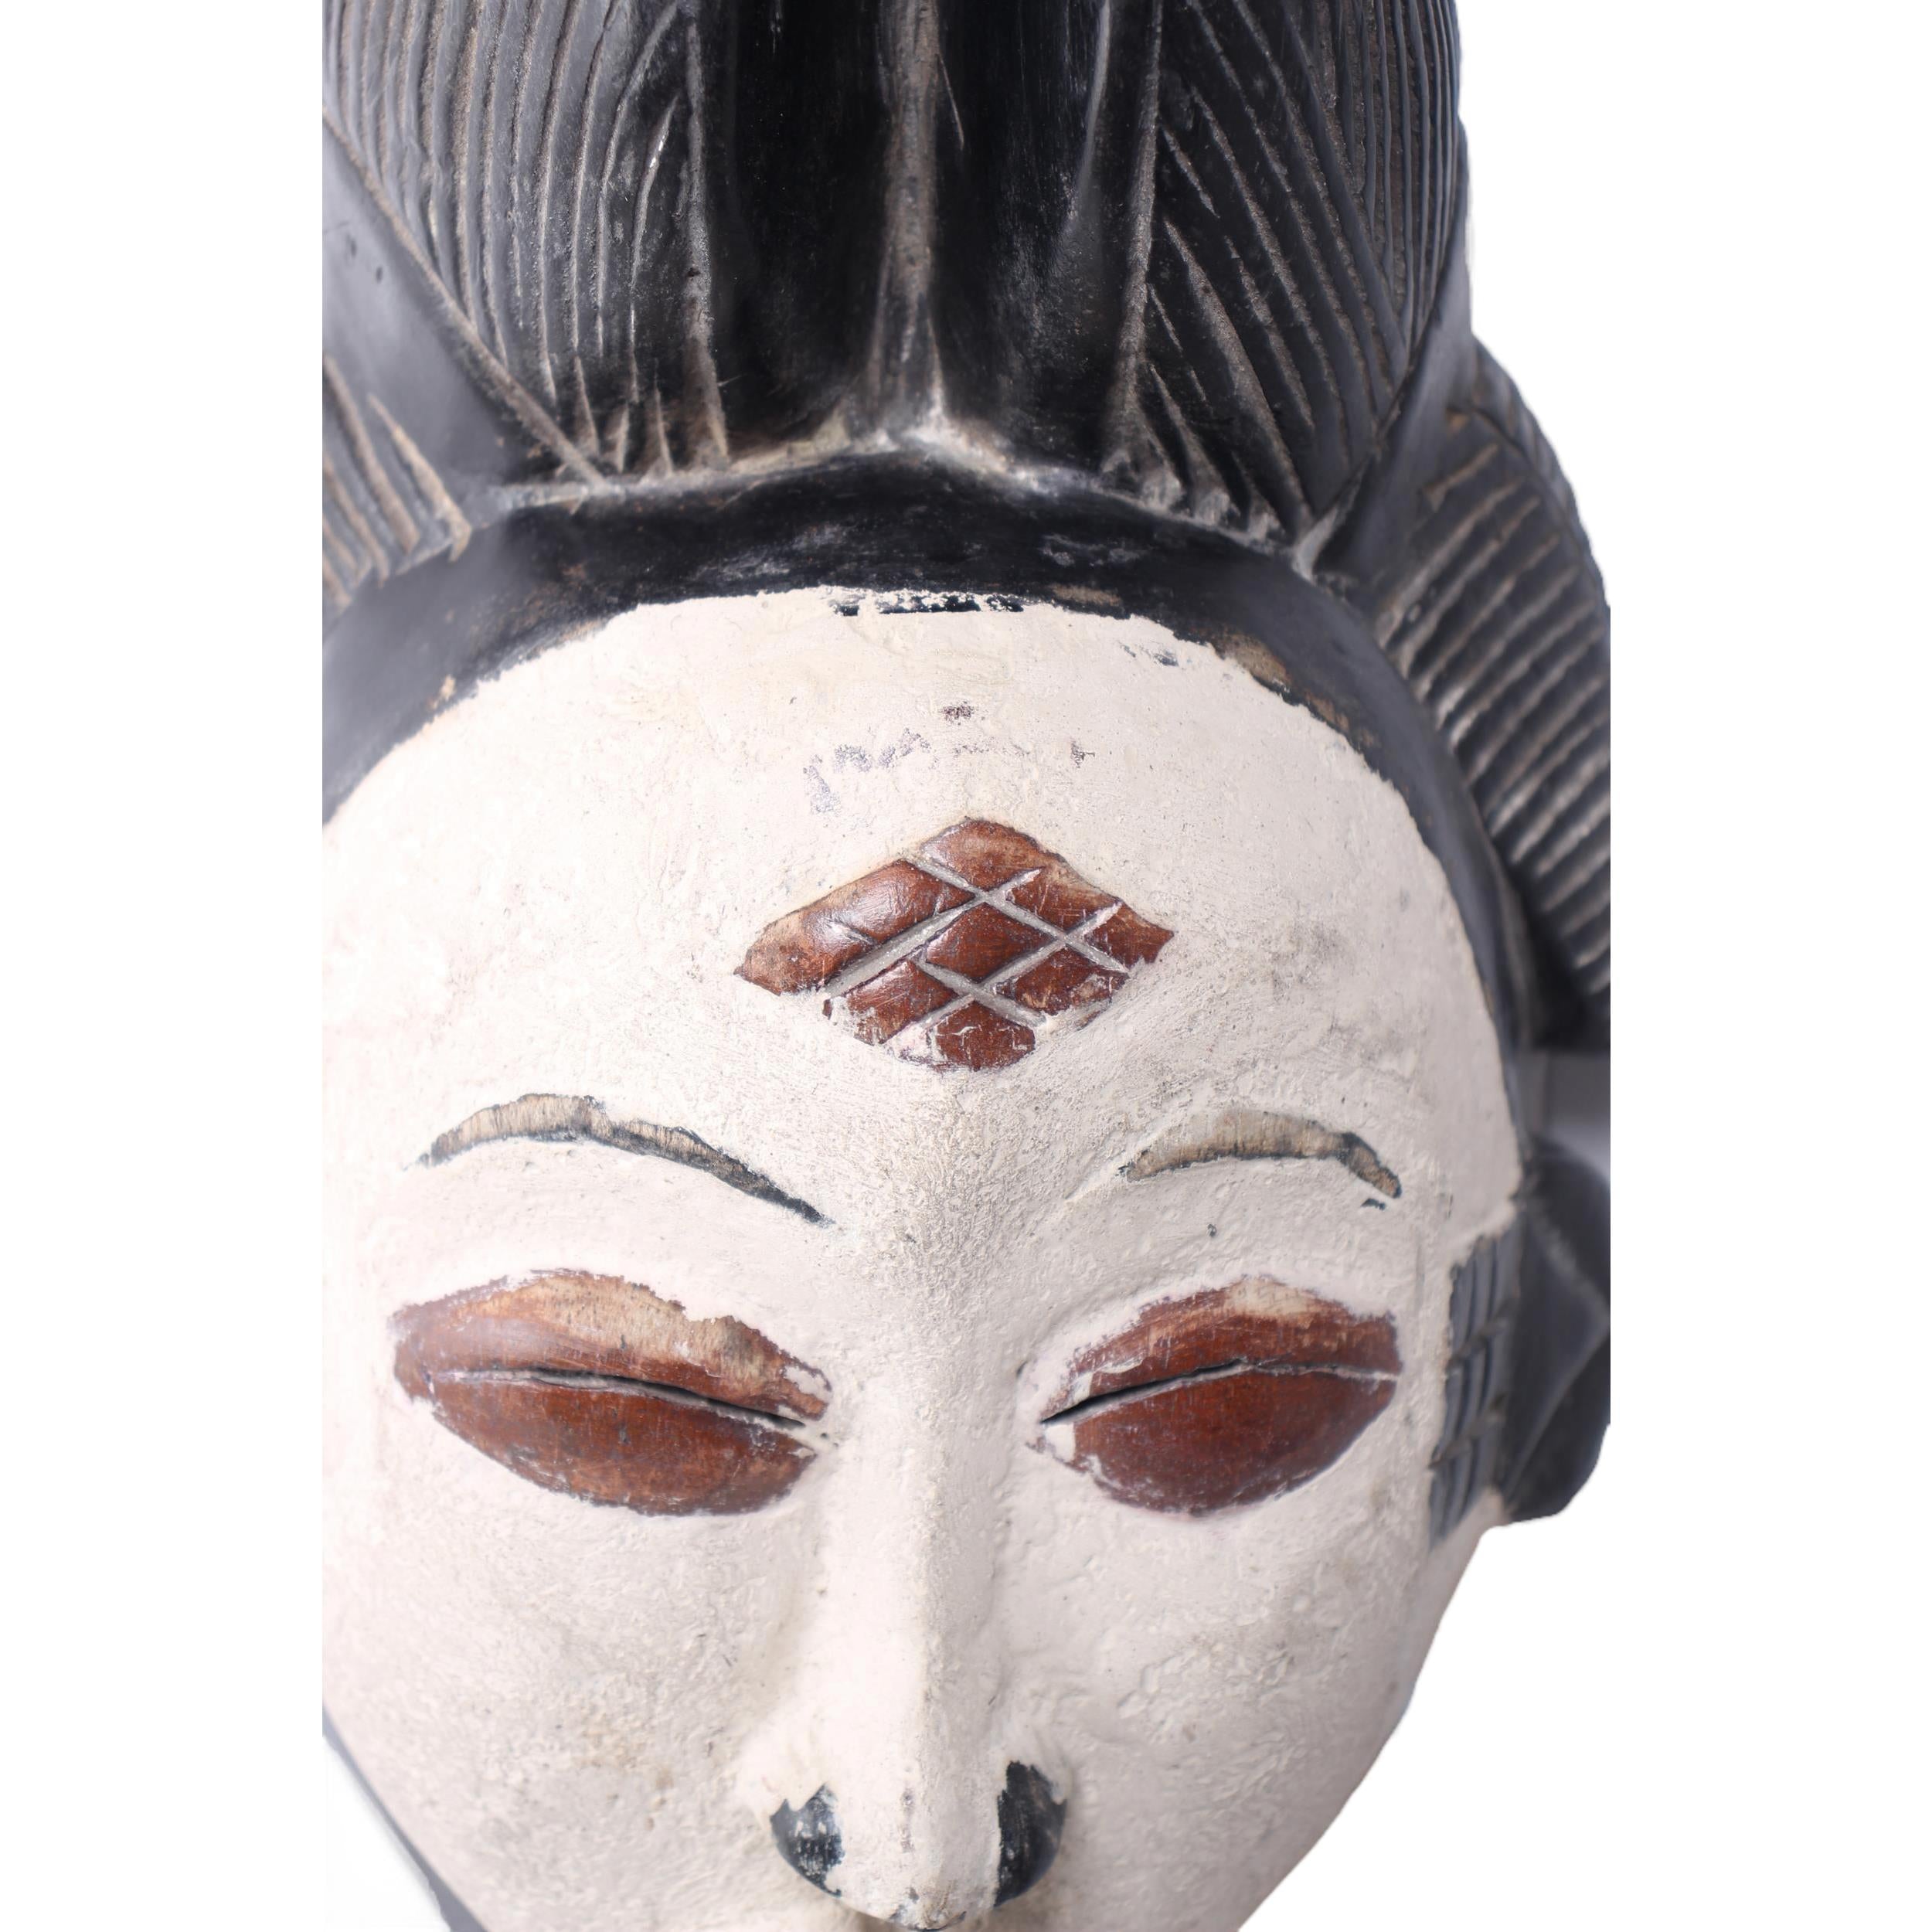 Punu Tribe Mask ~14.6" Tall - Mask